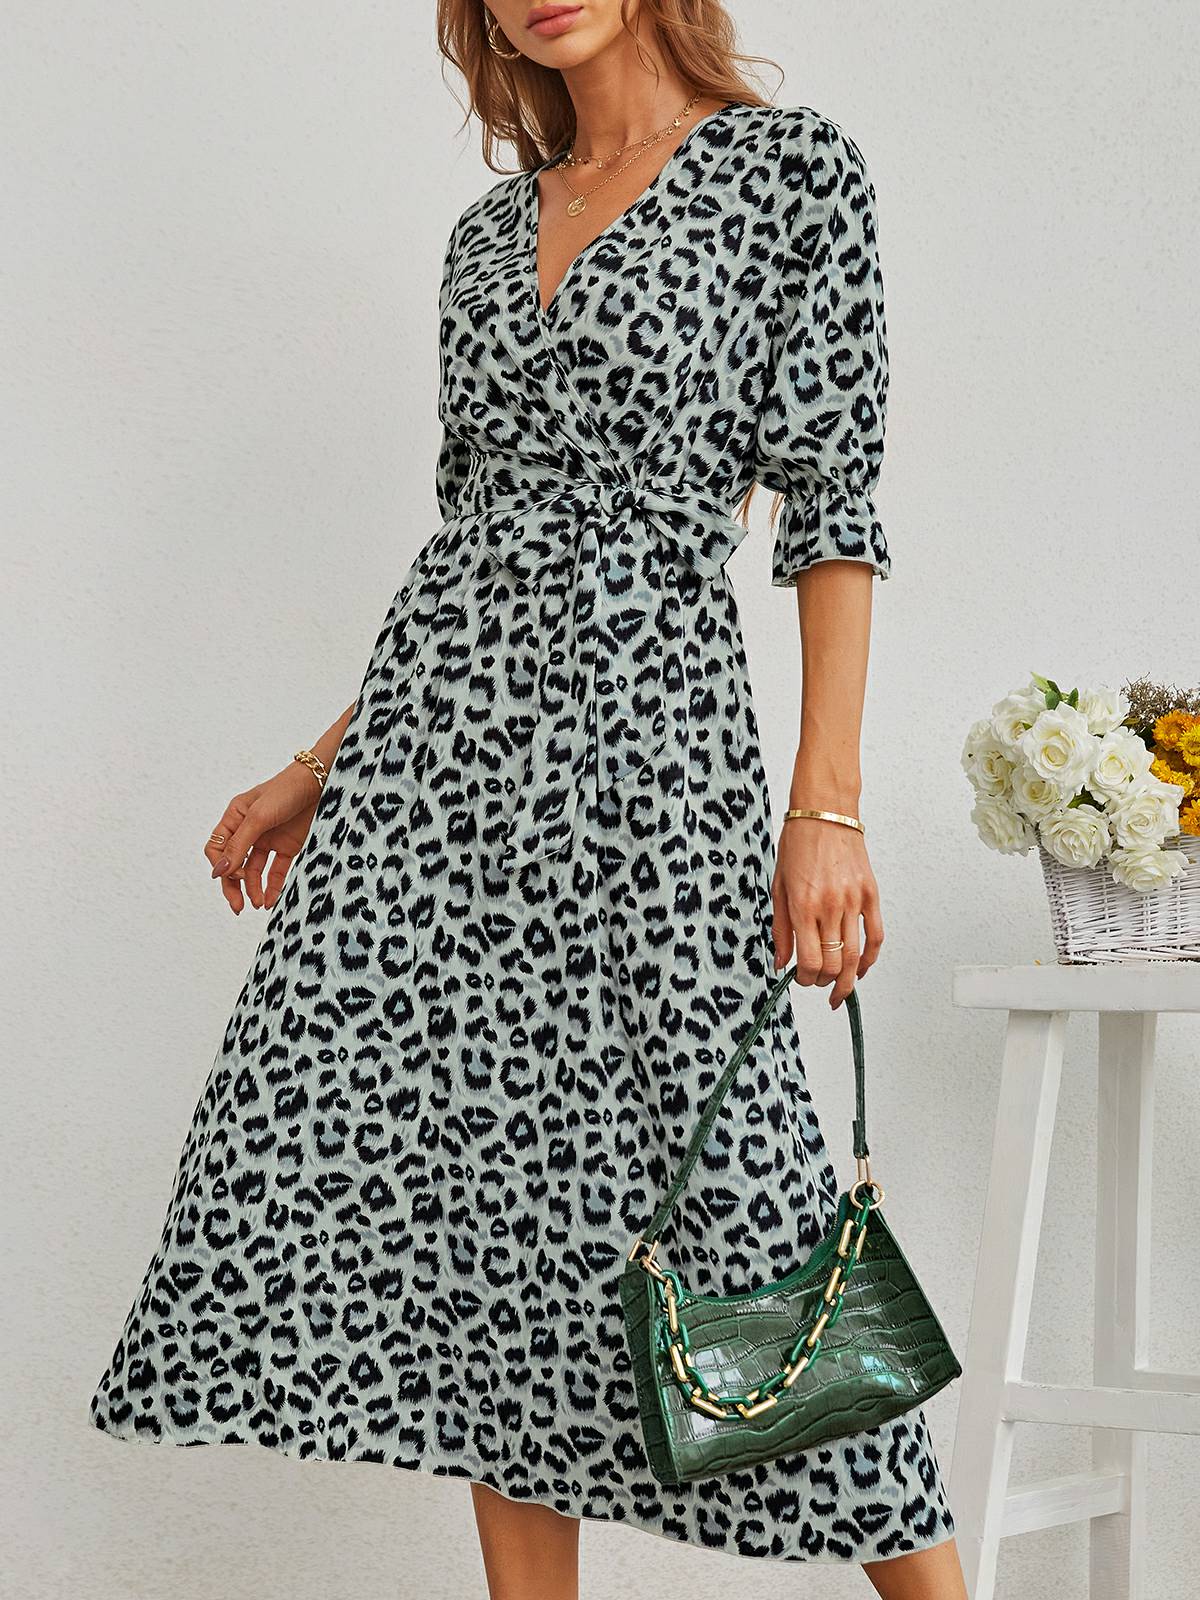 Leopard Print Slit Dress